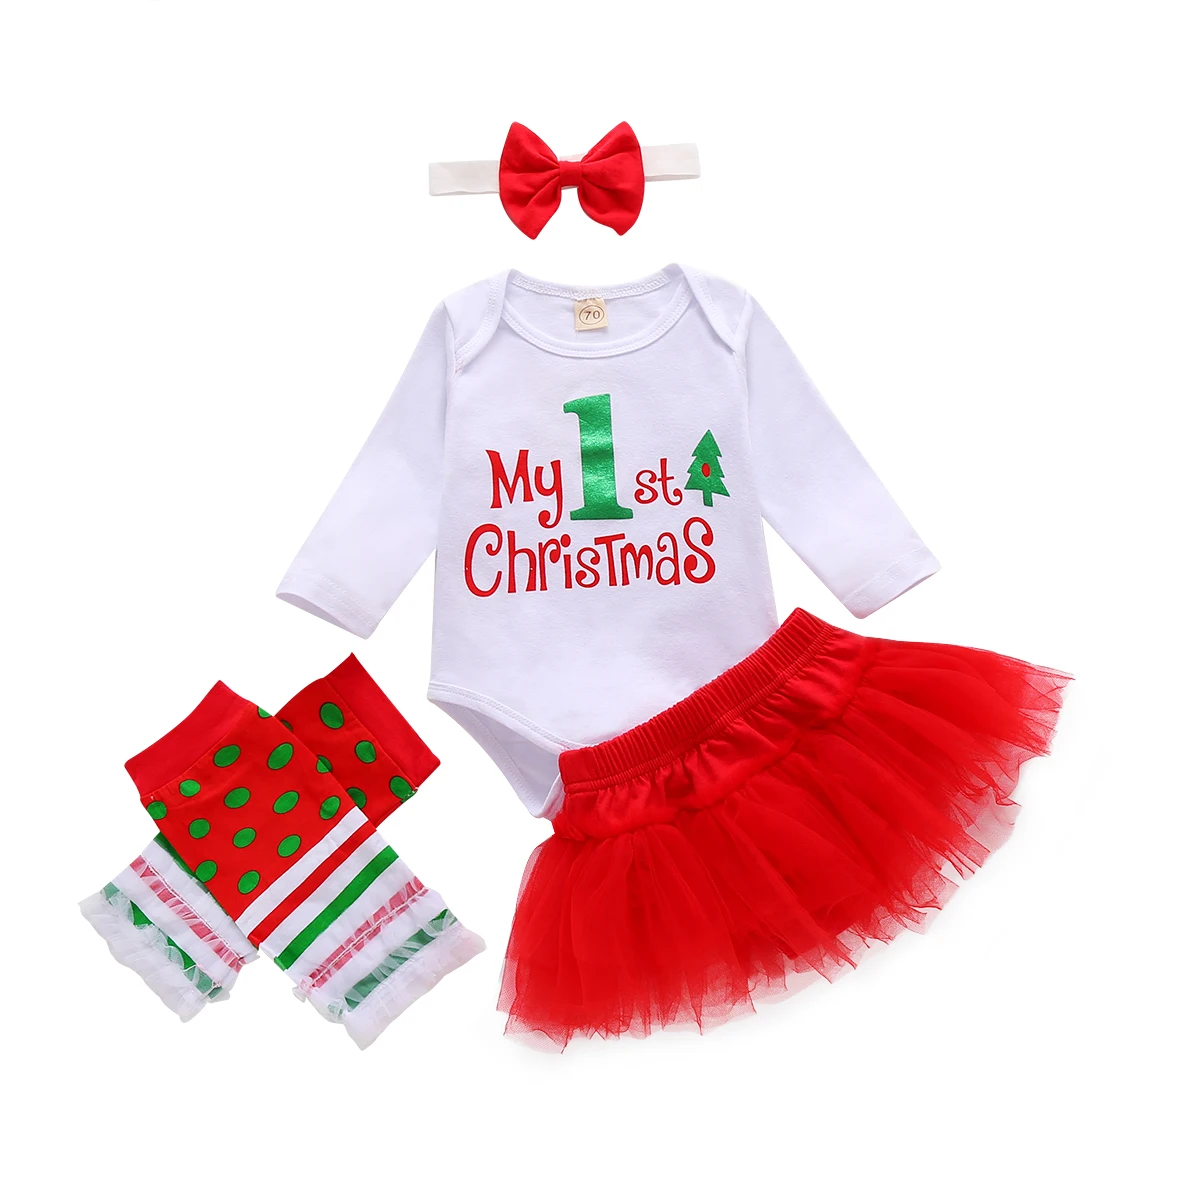 

4 шт., новорожденные рождественские наряды, комбинезон с длинным рукавом, круглым вырезом и буквенным принтом, сетчатая юбка, повязка на голо...